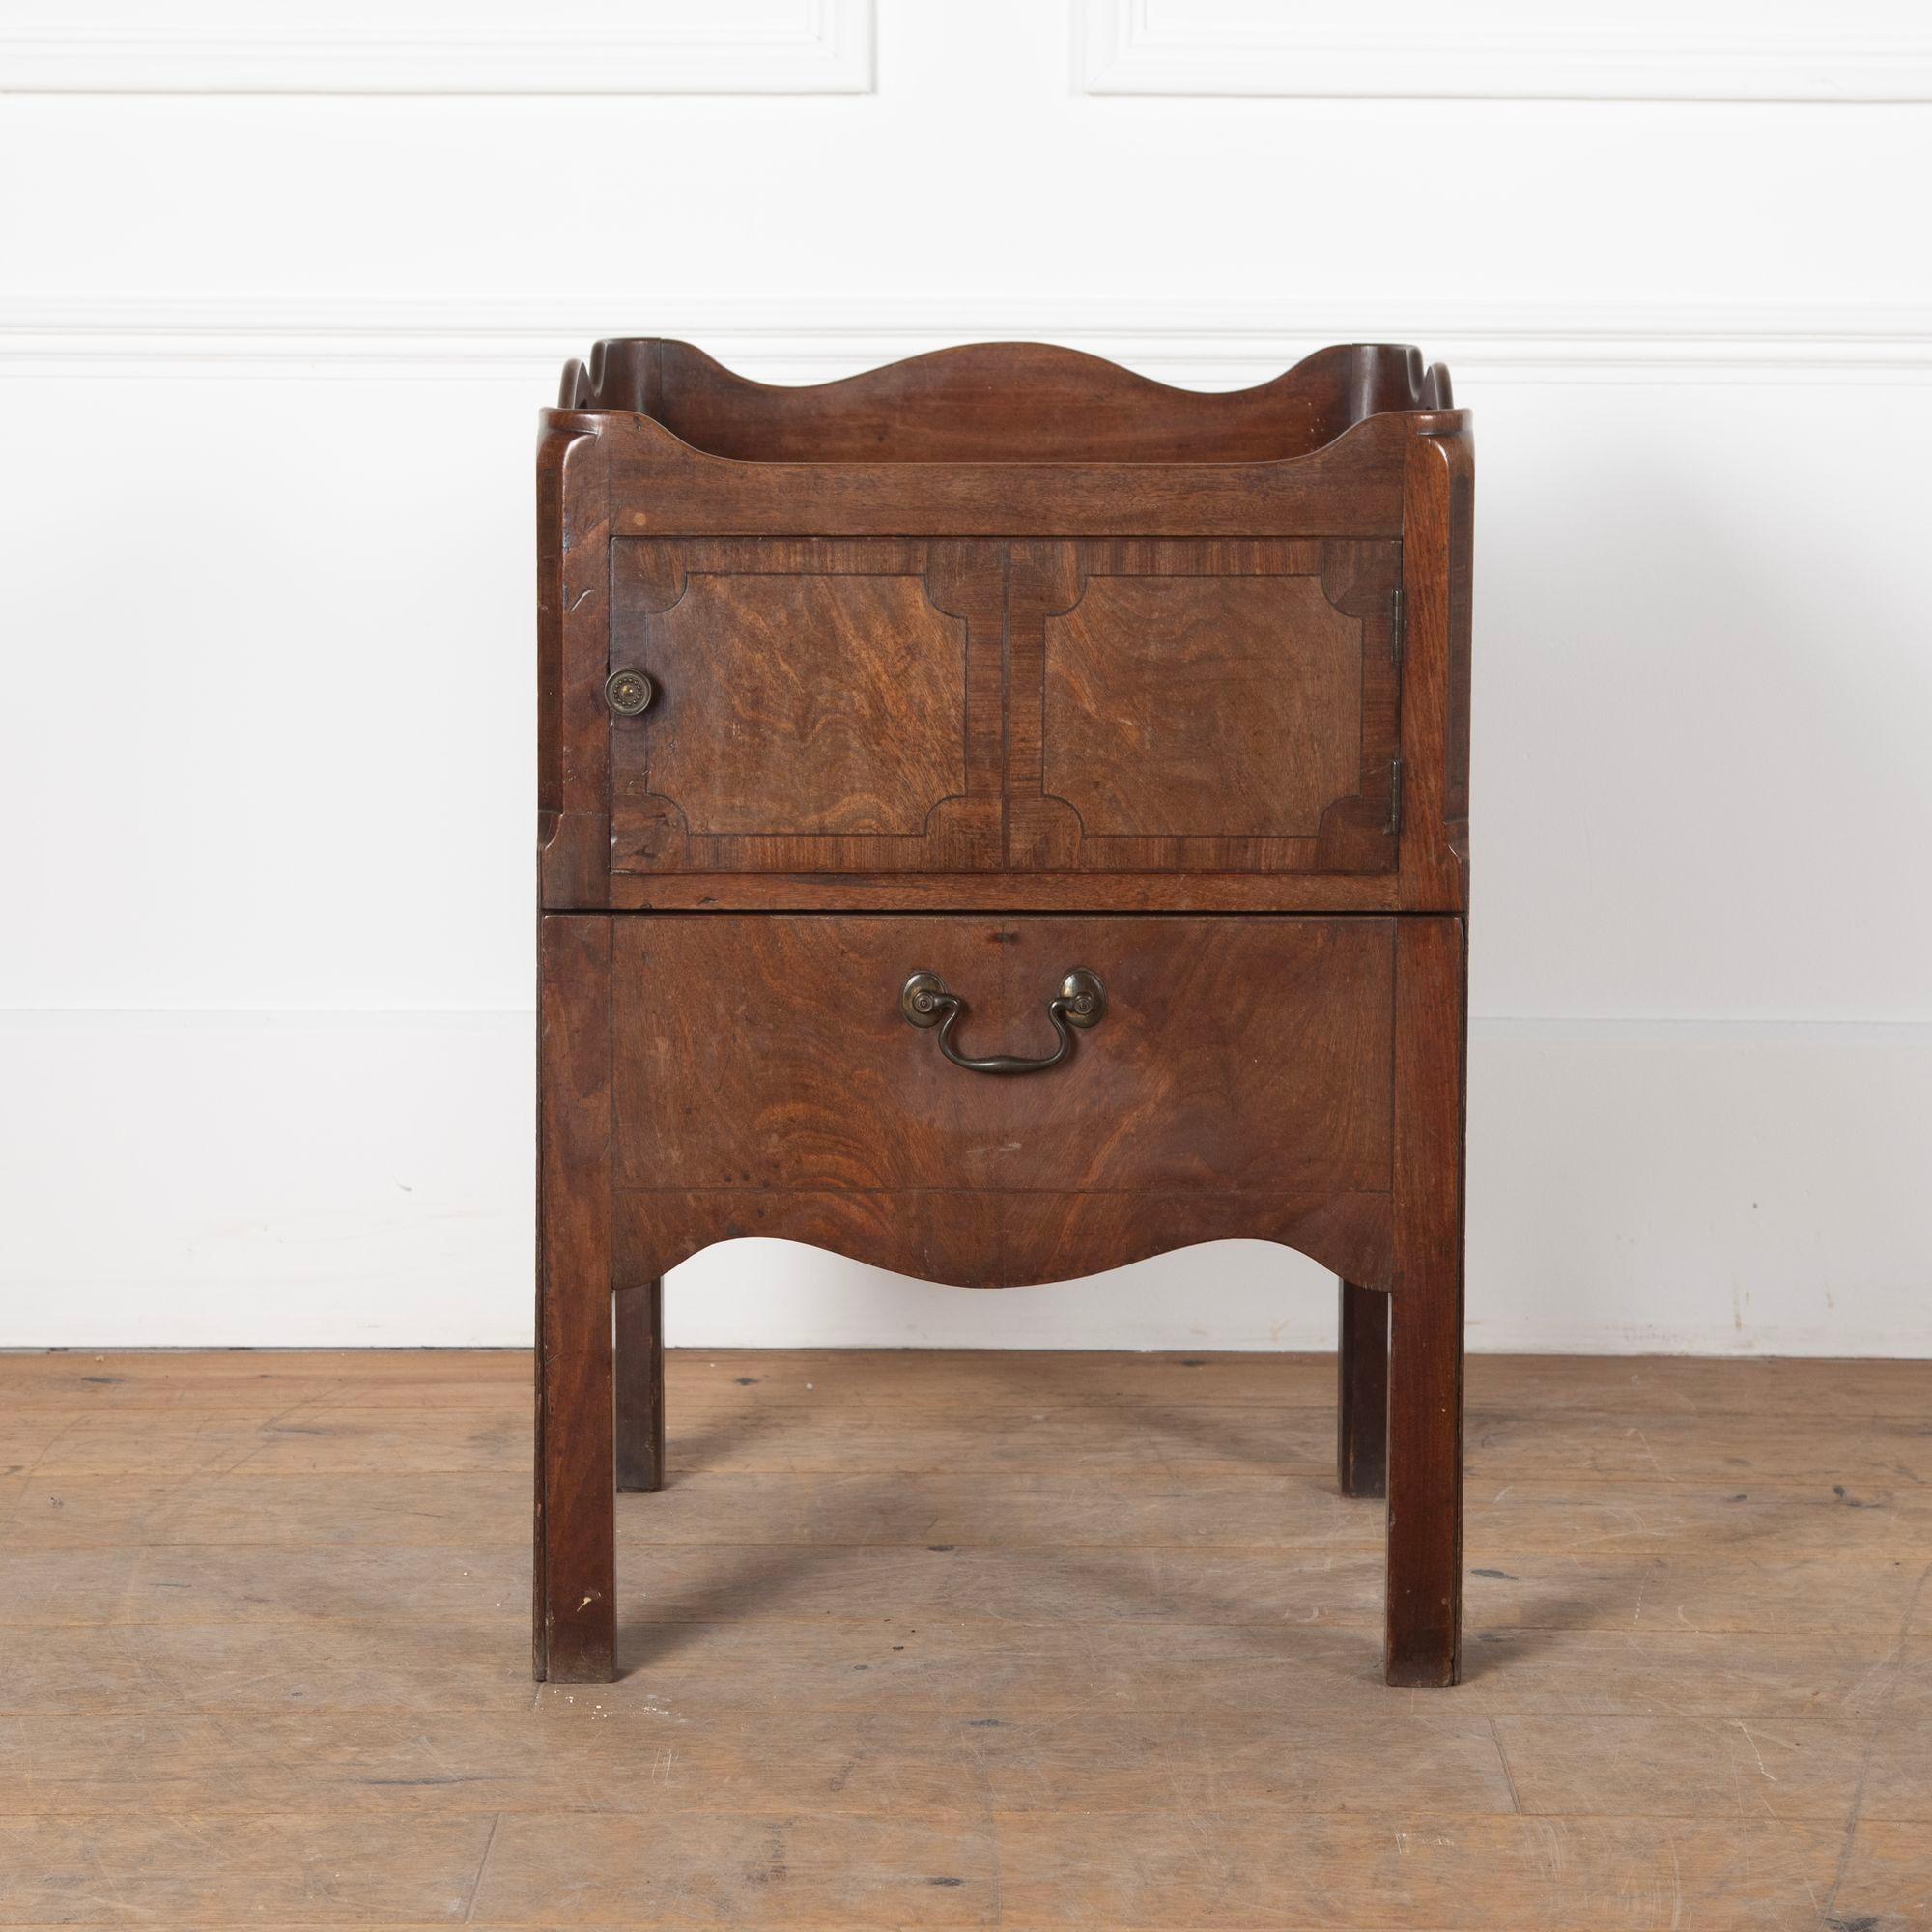 Nachttisch aus Mahagoni aus der Zeit von George III. mit ausziehbarer Schublade, früher eine Kommode.
Das Schrankfach wurde mit einem neuen Sockel versehen, und der Auszug, in den eine Kommode eingebaut war, wurde so umgebaut, dass er eine neue